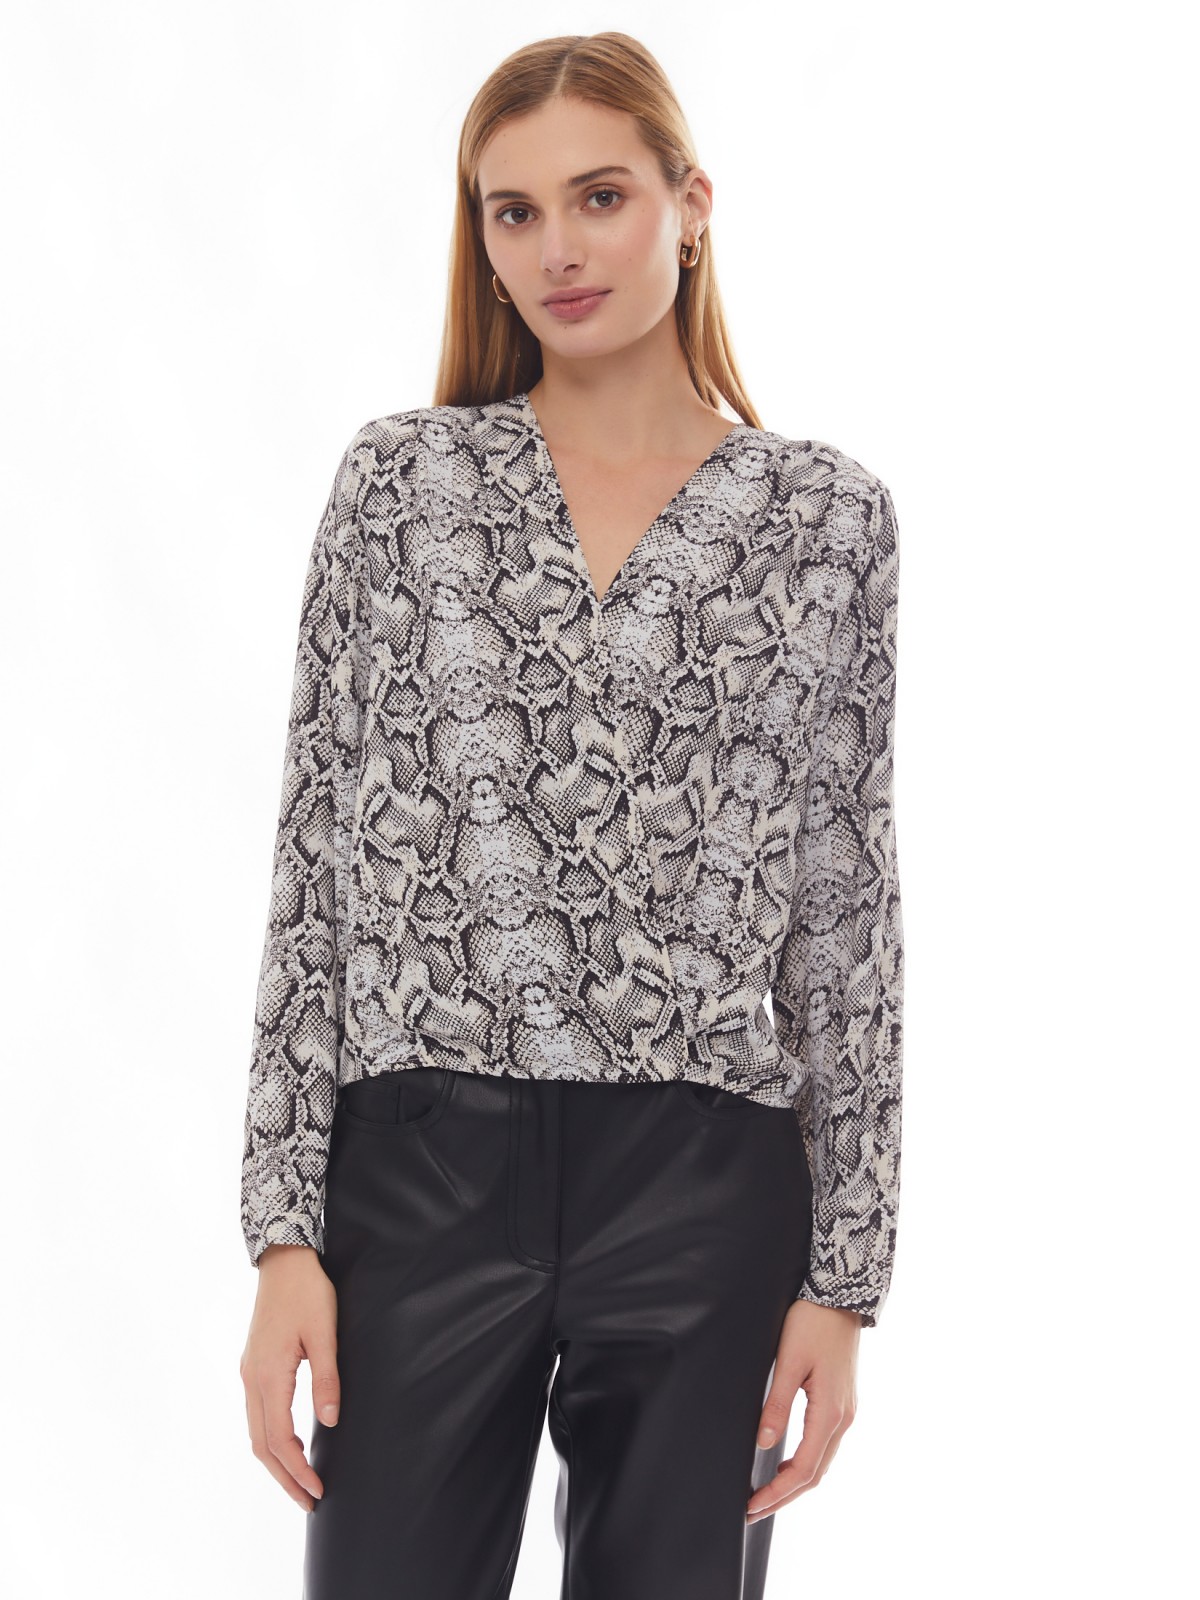 Принтованная блузка на резинке с запахом zolla 024131159571, цвет серый, размер XS - фото 4